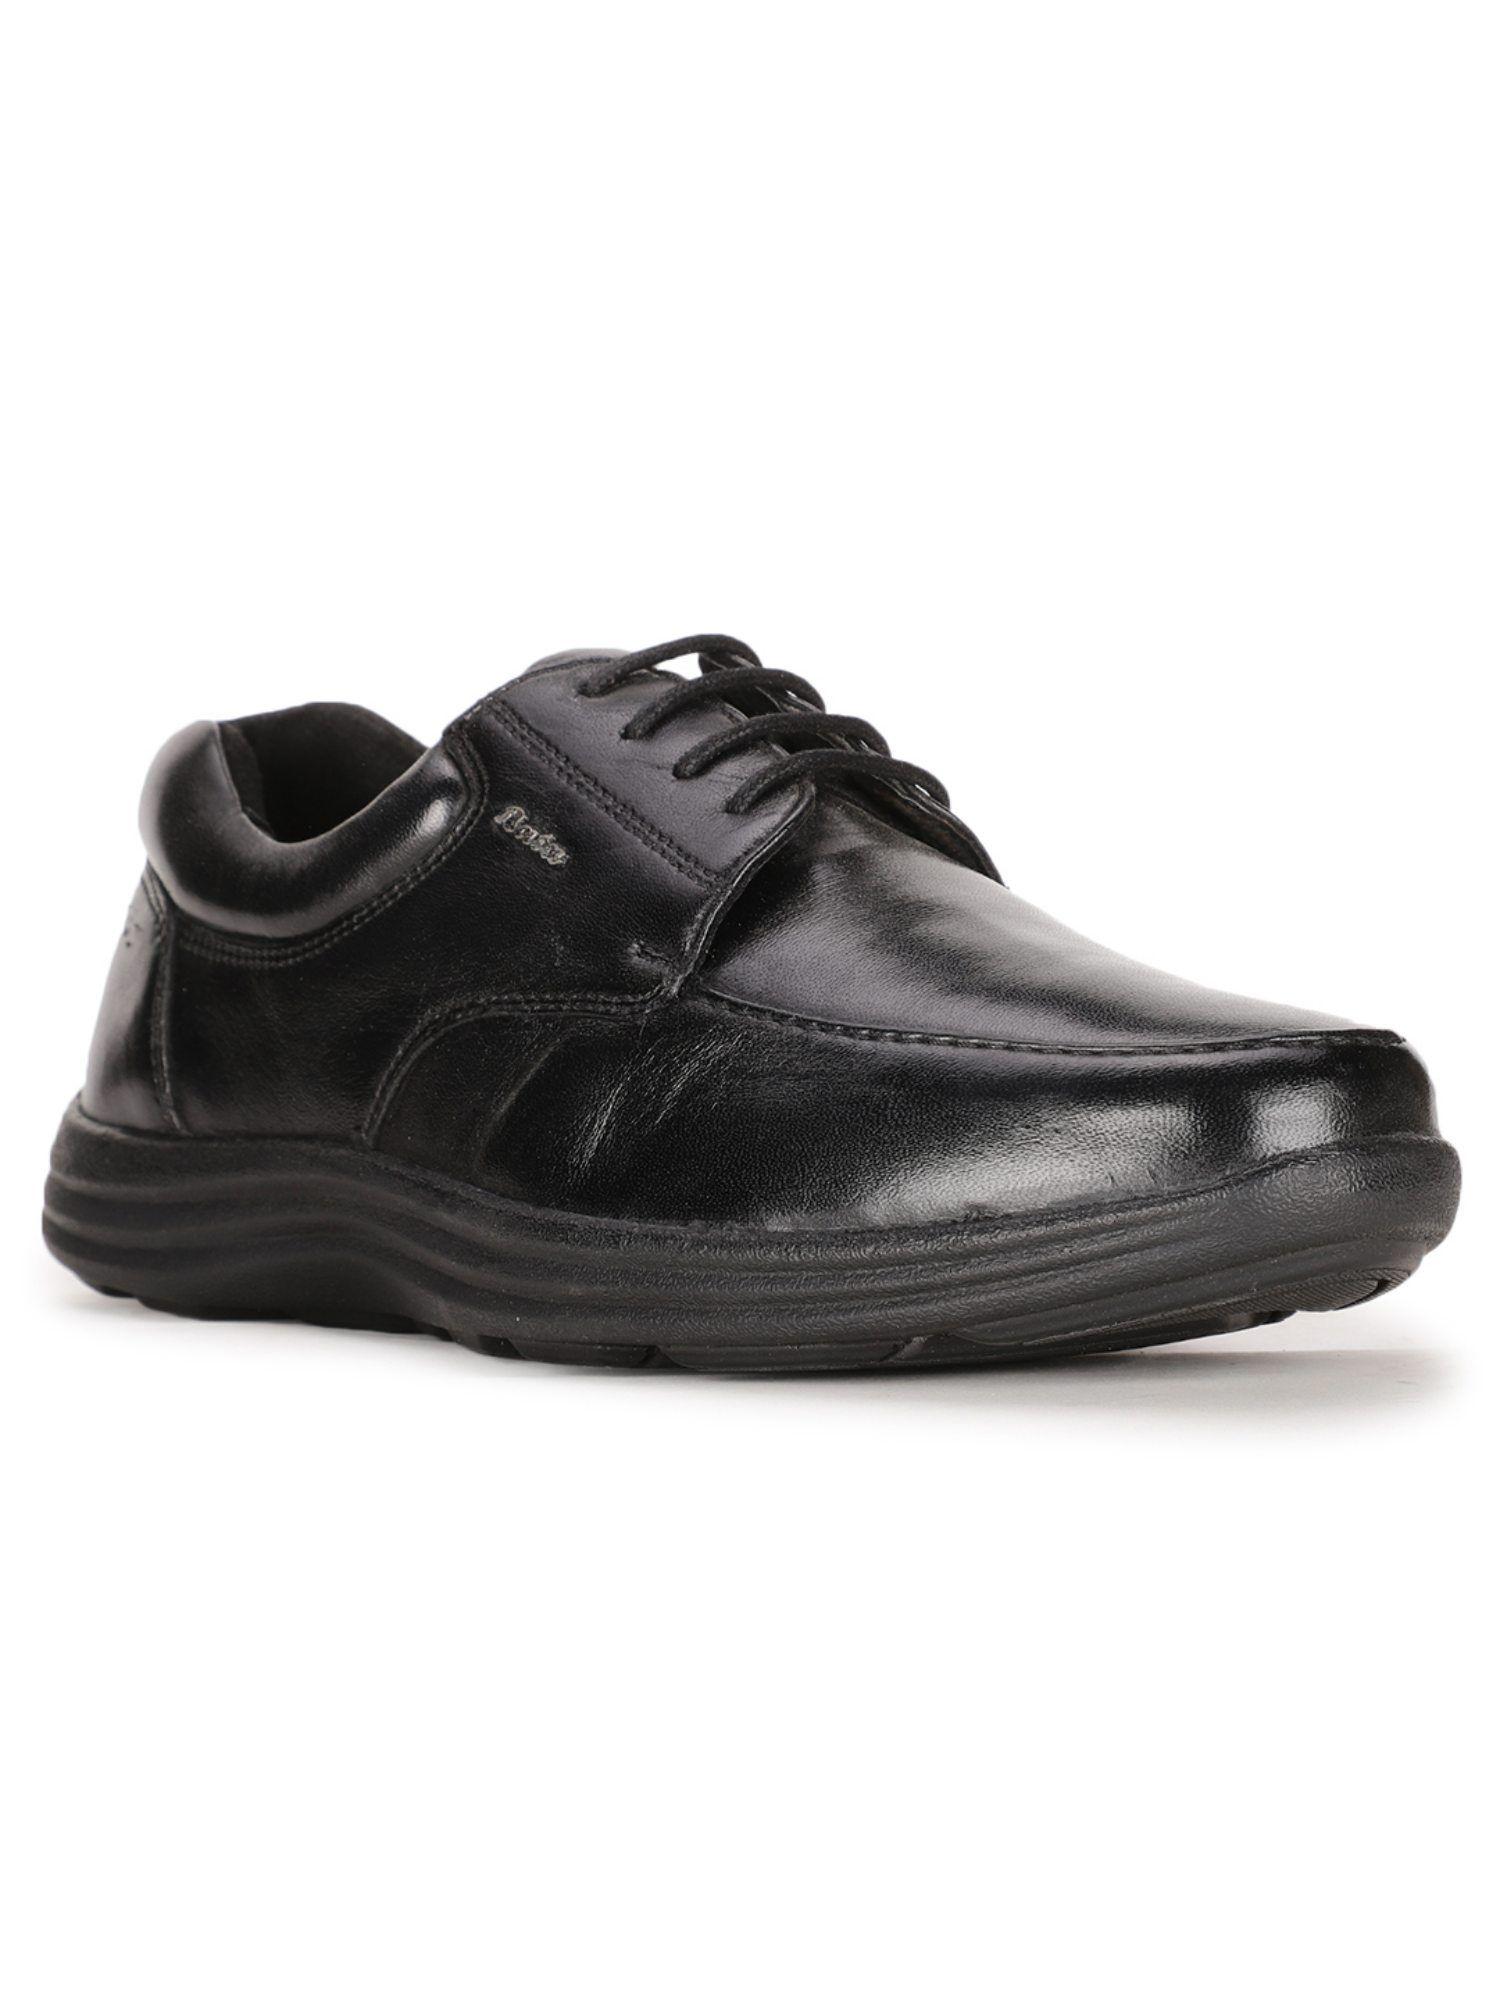 solid black formal derby shoes